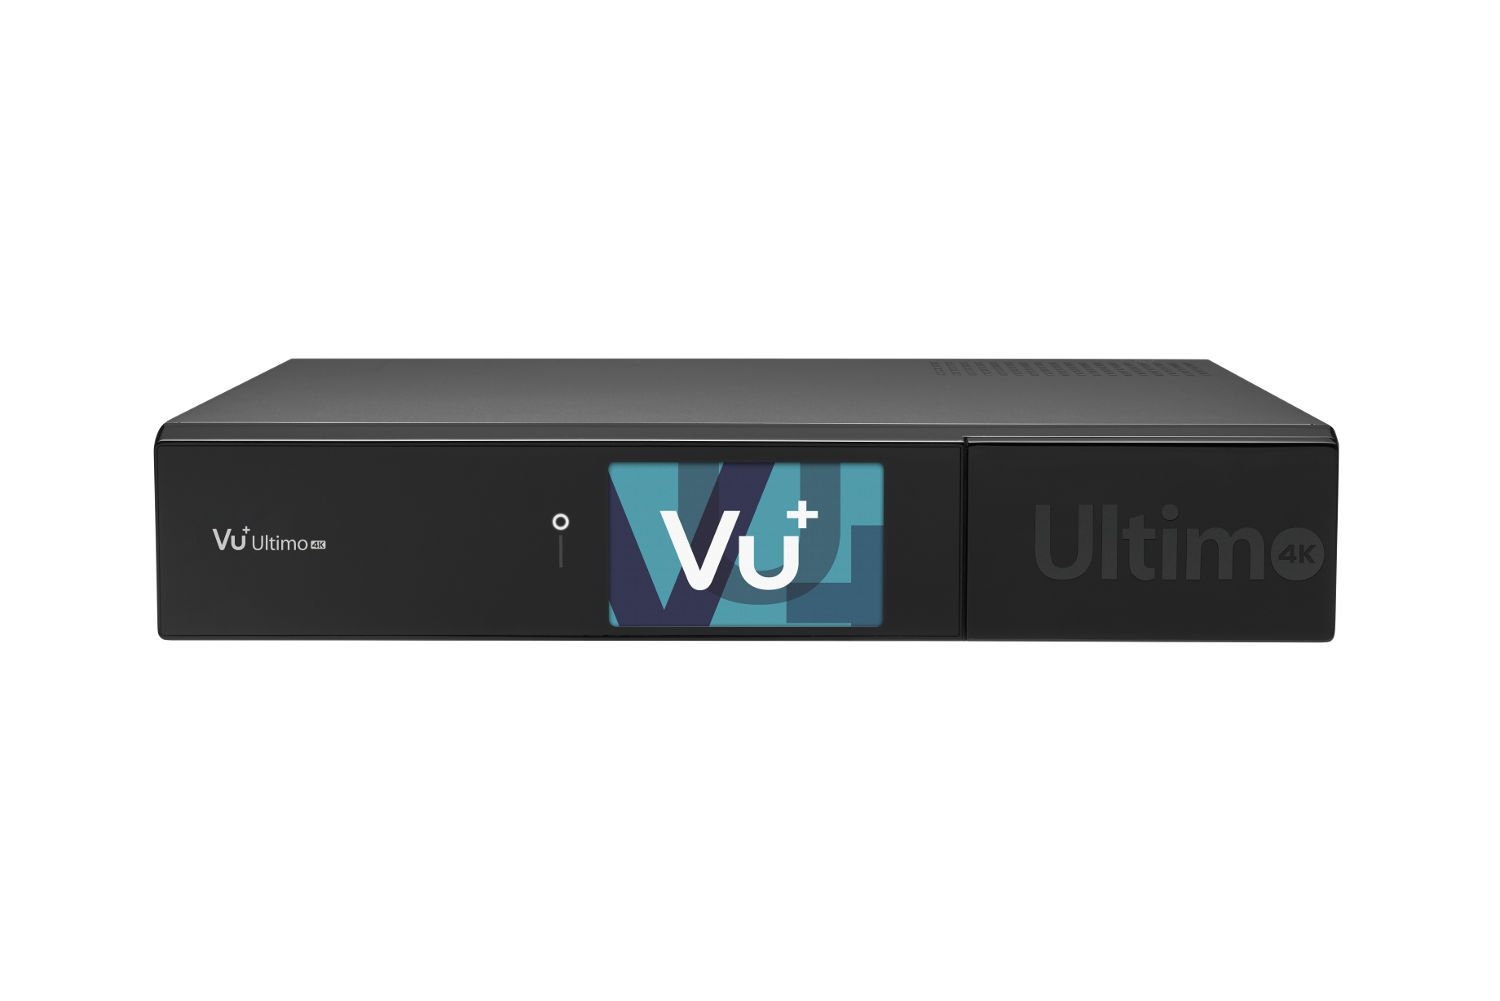 VU+ Ultimo 4K 2x DVB-S2X FBC Twin Tuner 6 TB HDD Linux Receiver UHD 2160p